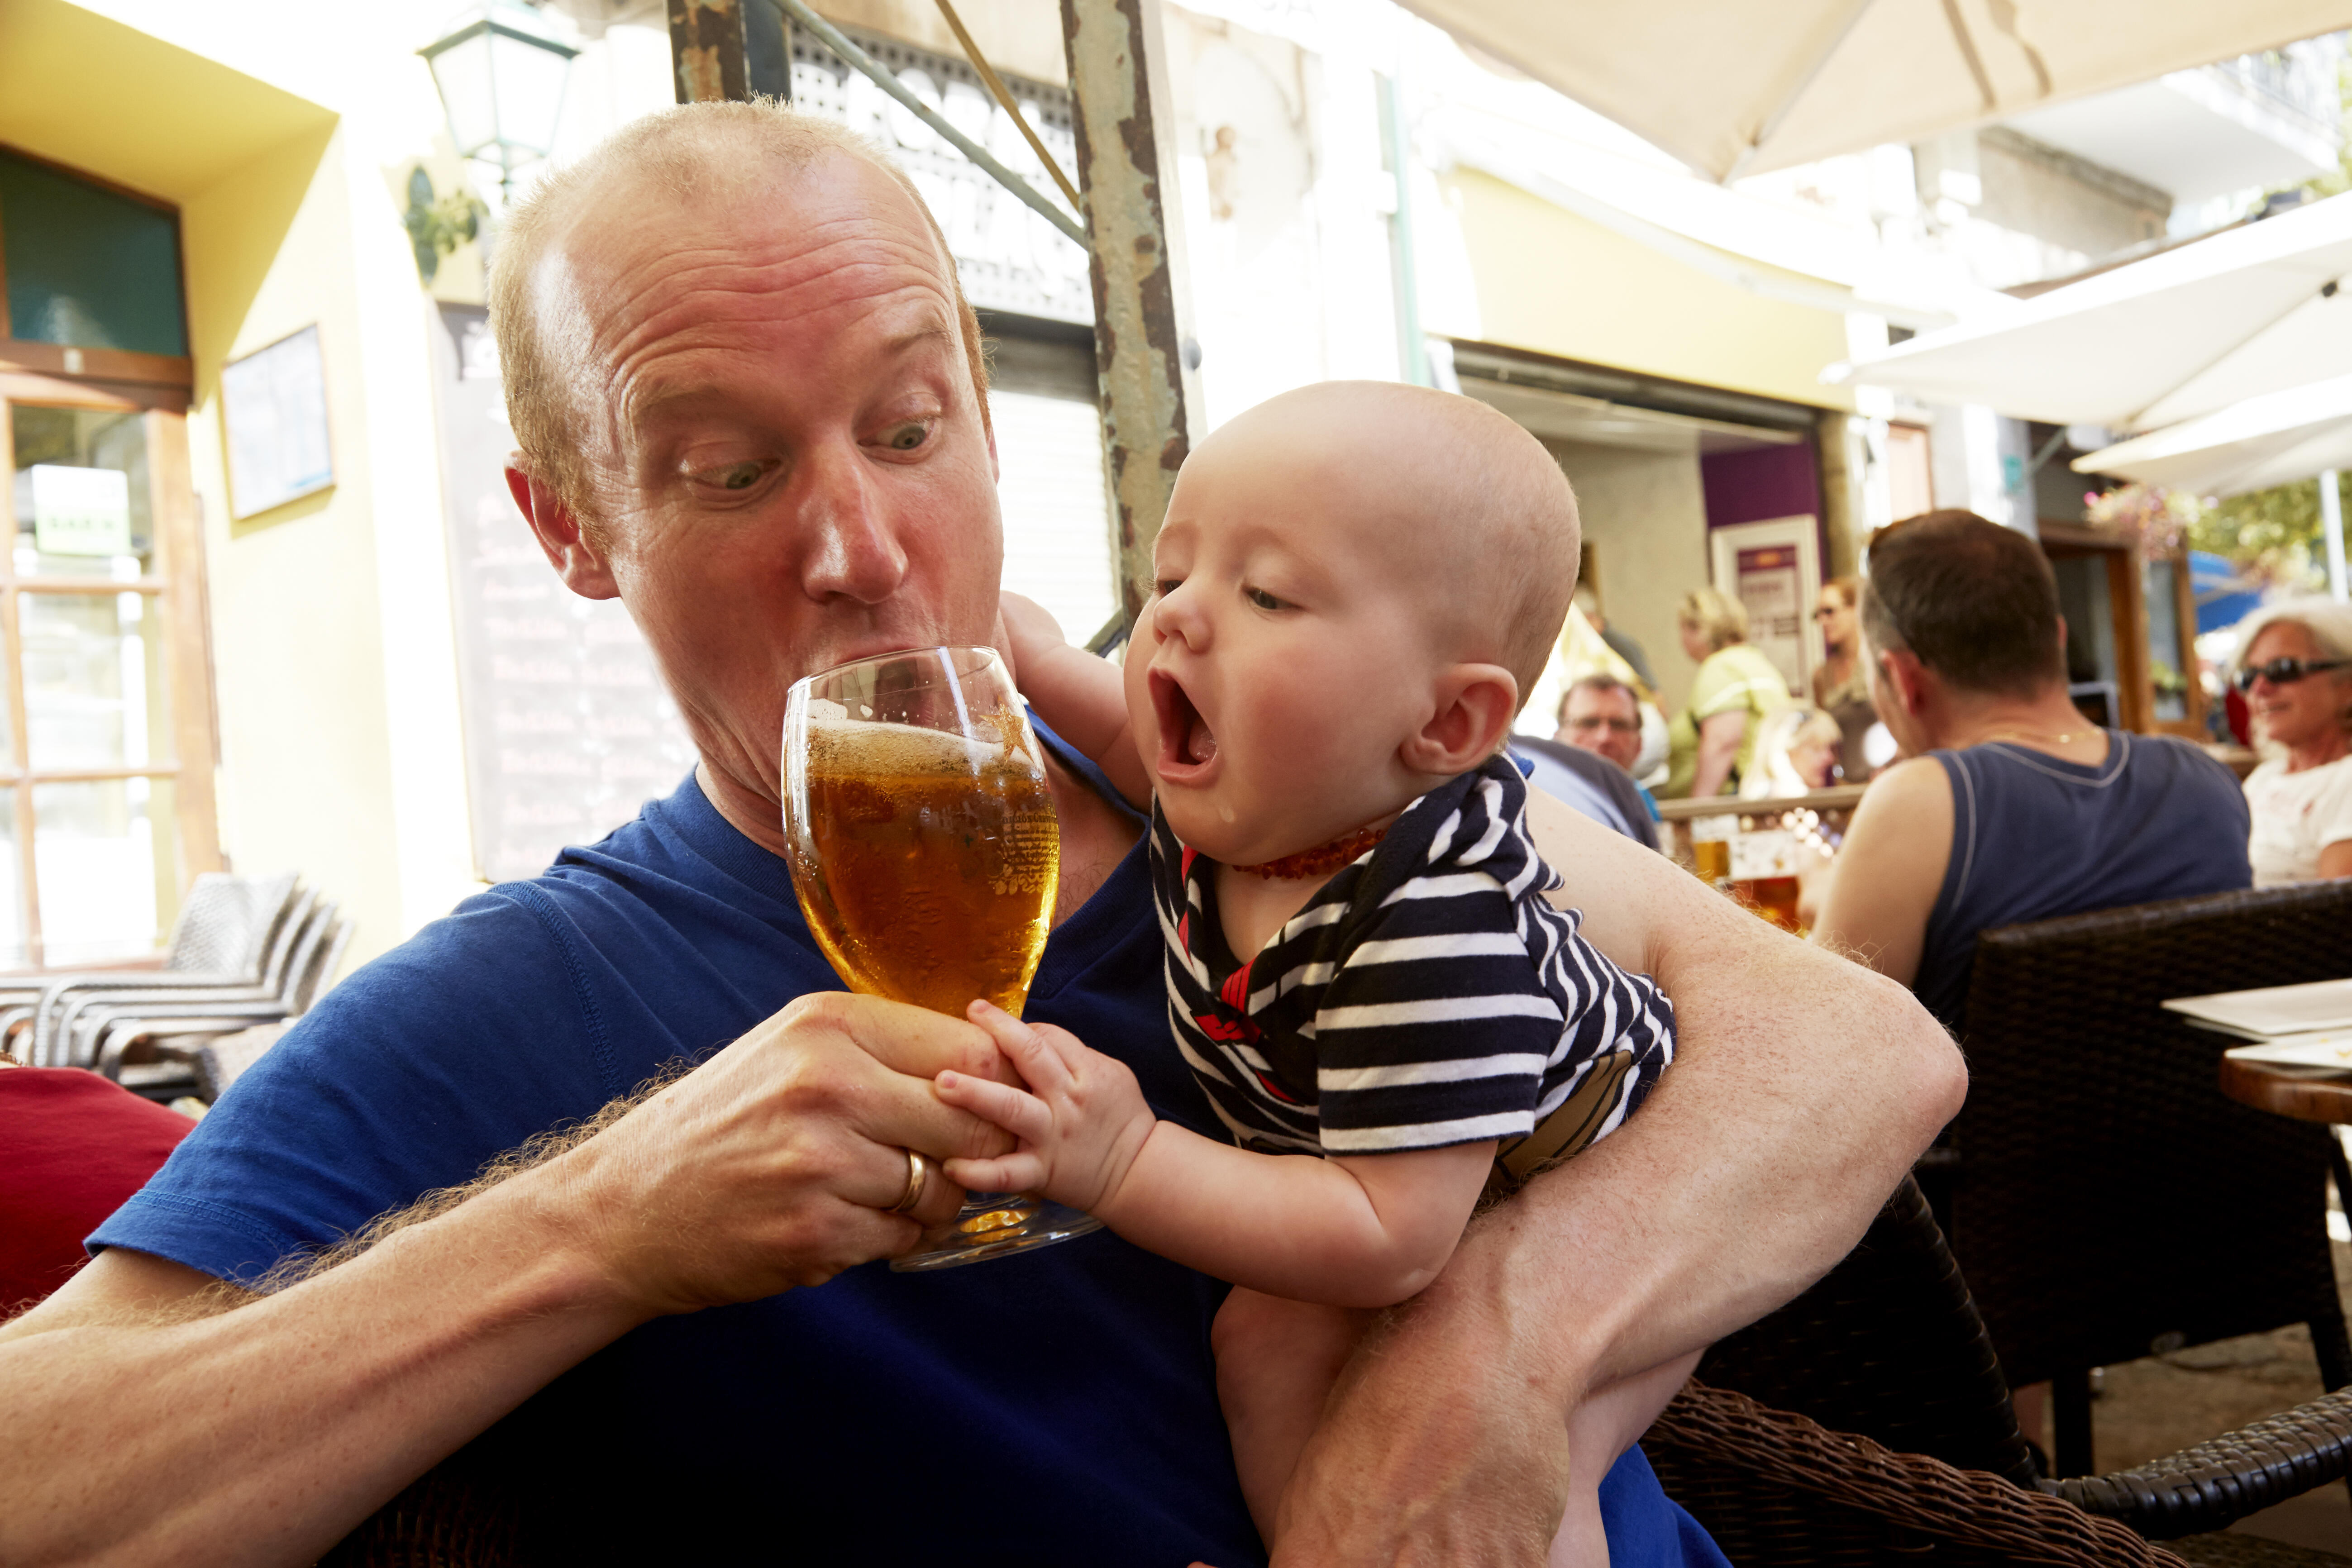 Сын пьет что делать матери. Ребенок с пивом. Папа пьет пиво. Папа с пивом и ребенком. Мужчина с ребенком.